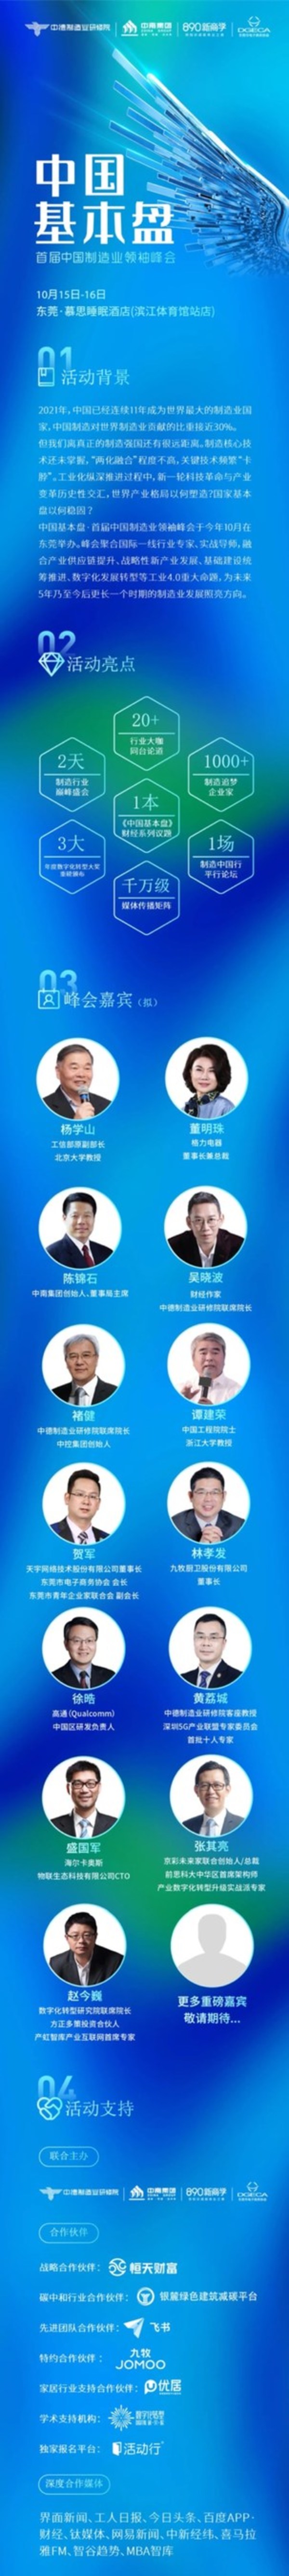 中国基本盘·首届中国制造业领袖峰会详情